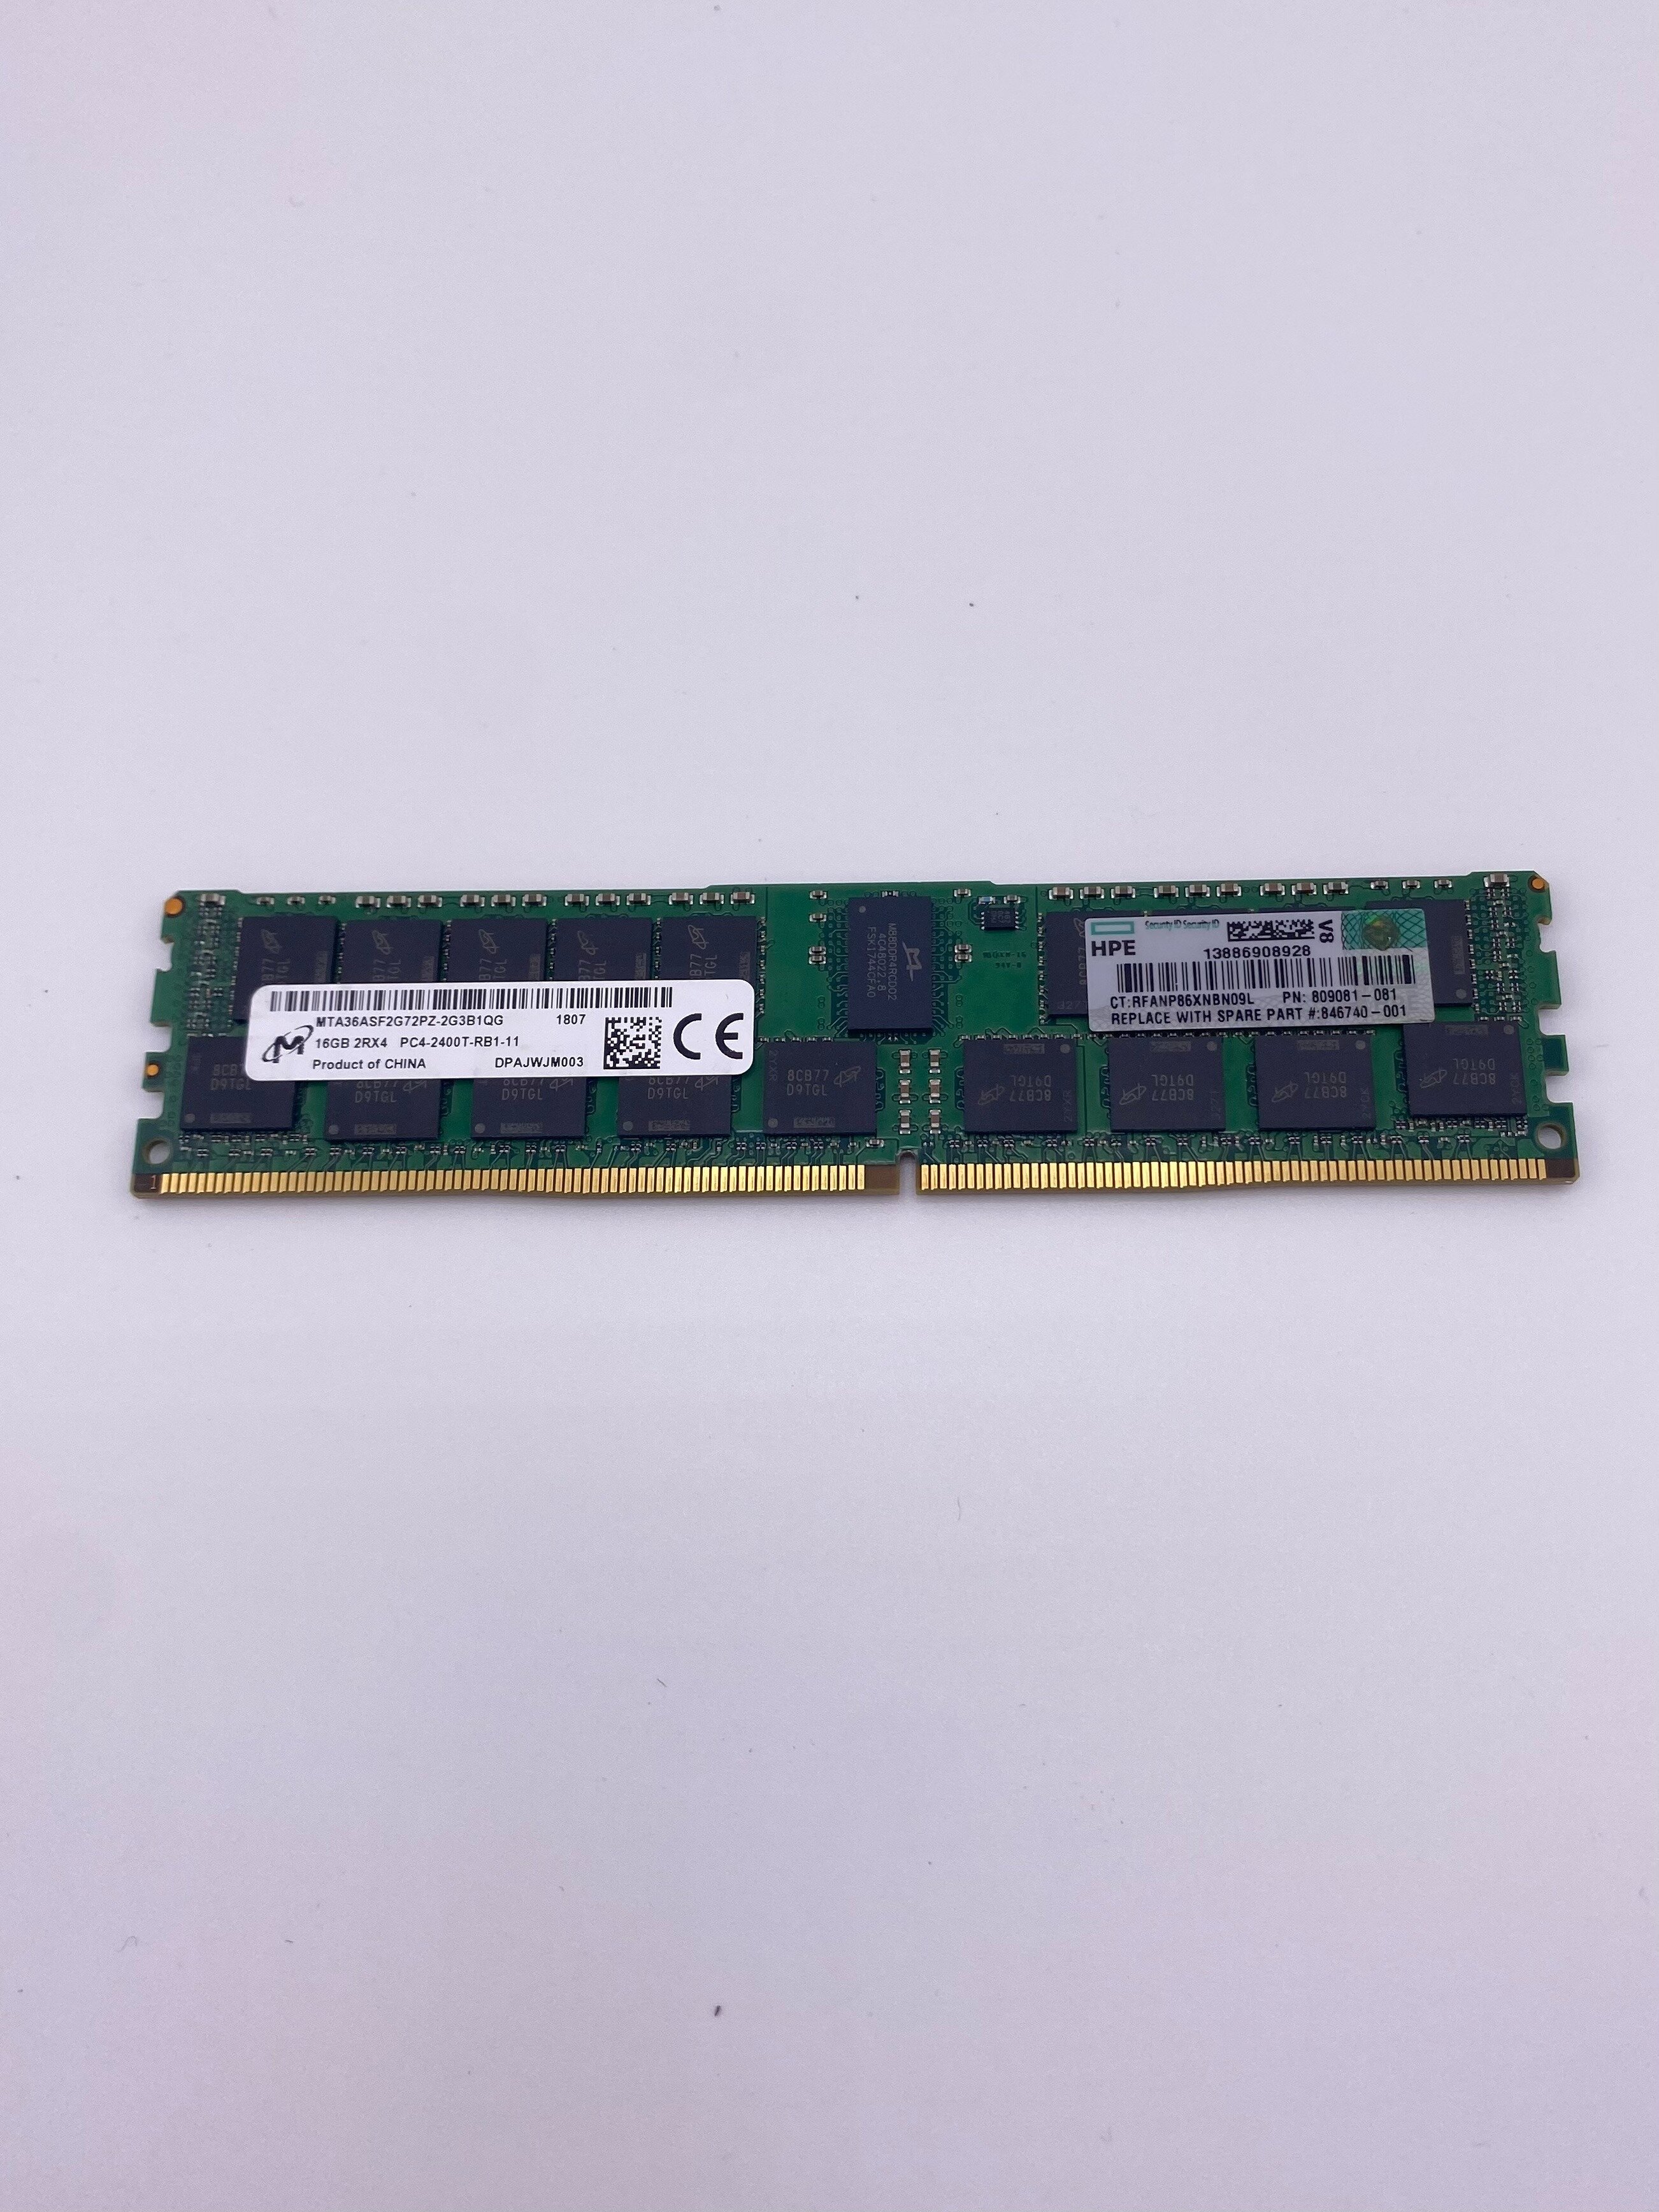 Оперативная память HPE 16GB (1x16GB) 2Rx4 PC4-2400T-R DDR4 Reg 836220-B21, 809081-081, 846740-001